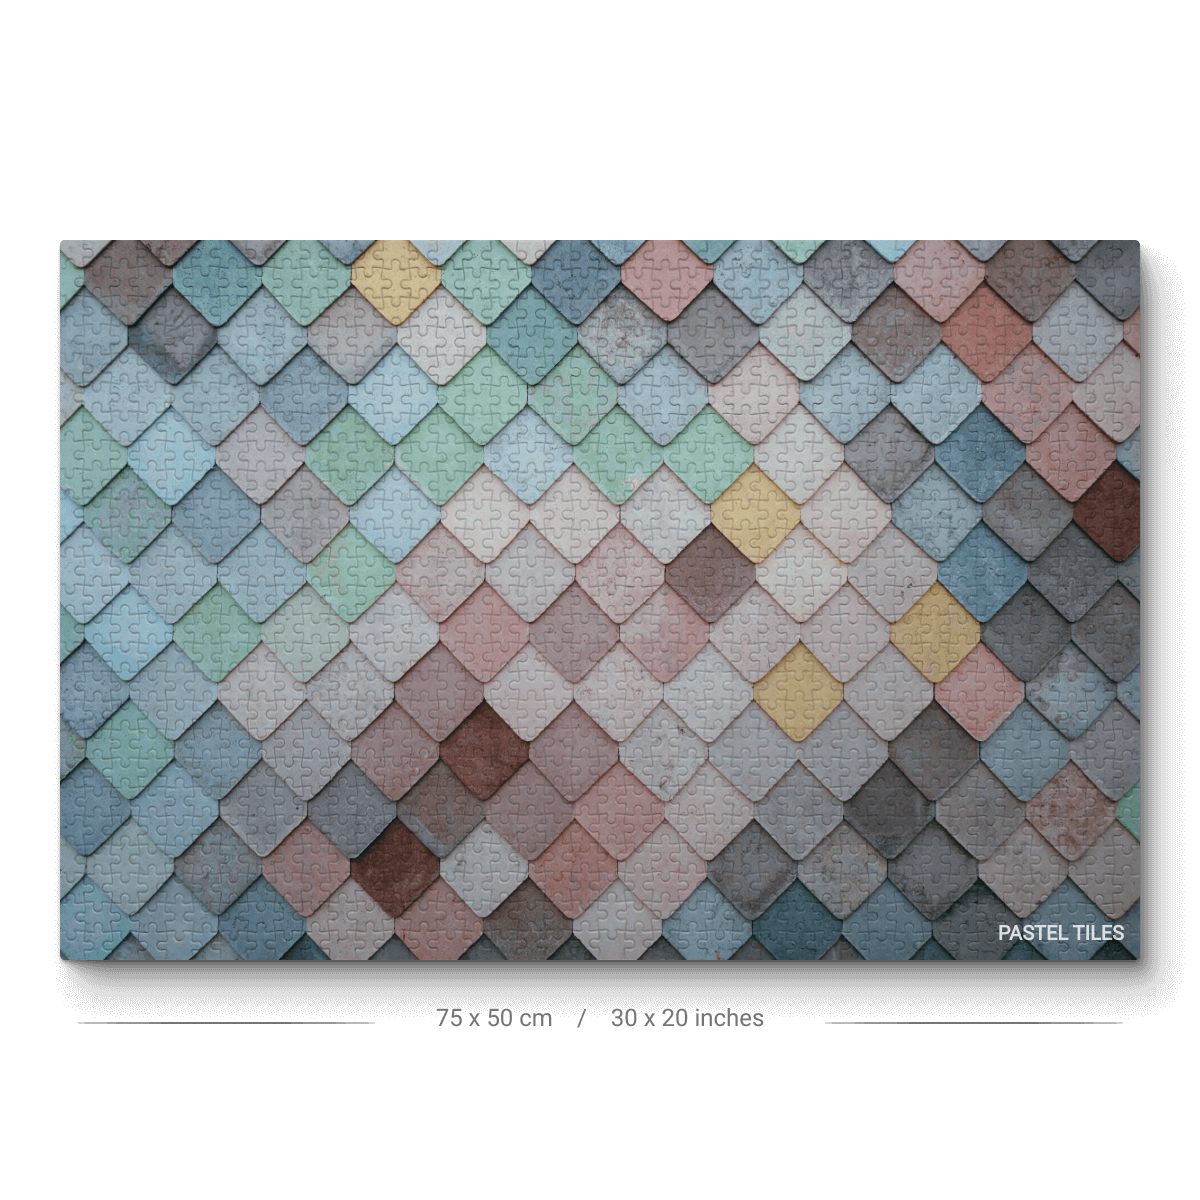 Pastel Tiles Jigsaw Puzzle